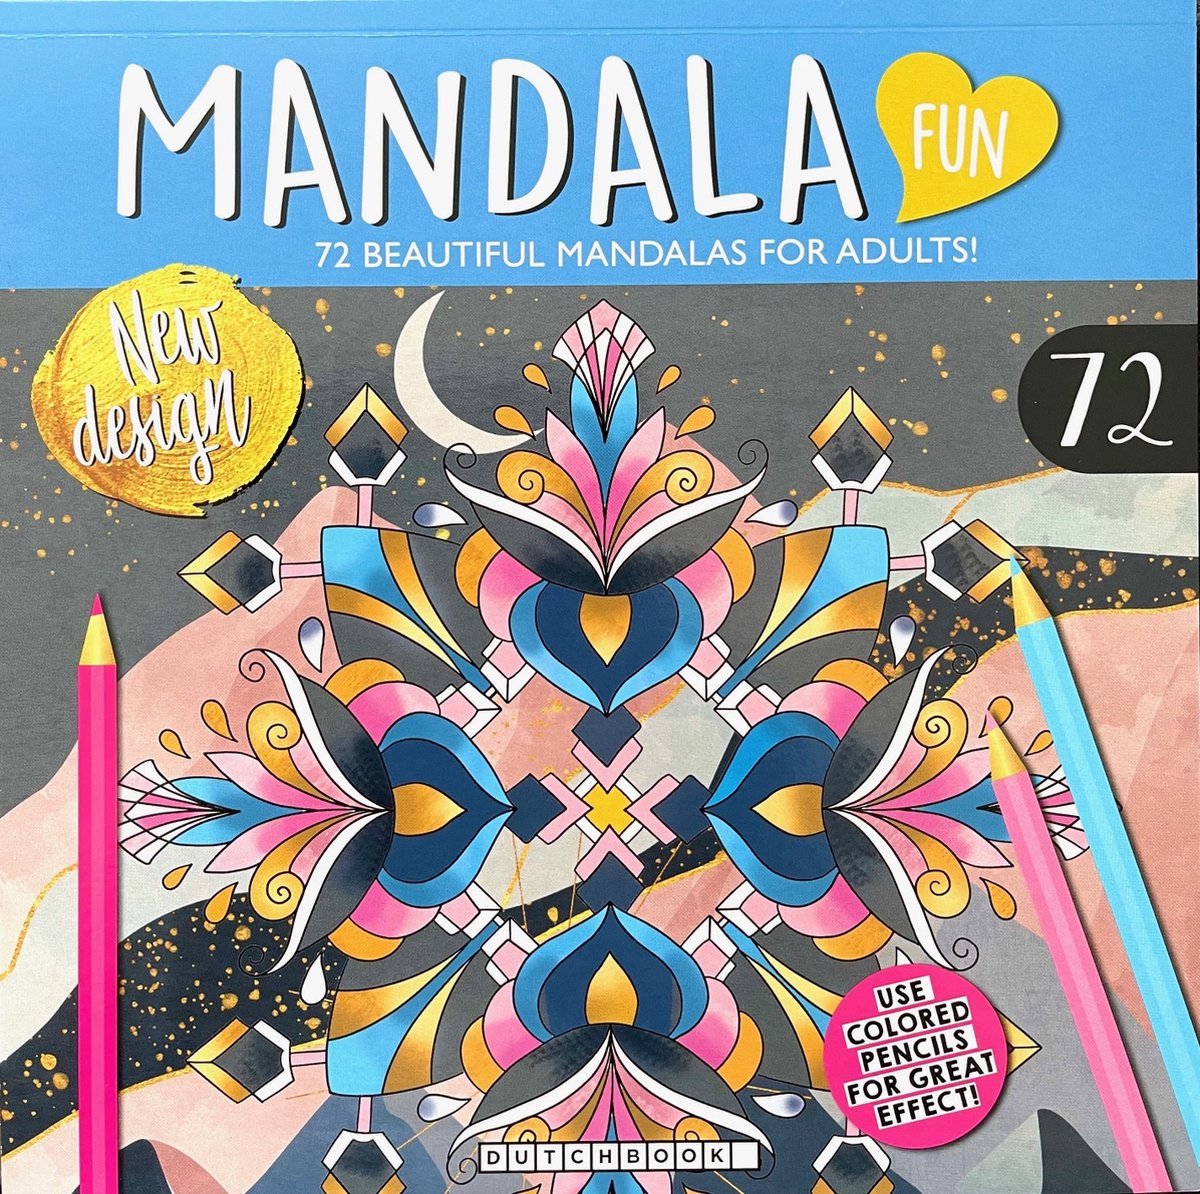 Mandala Kleurboek voor Volwassen met 72 Kleurplaten